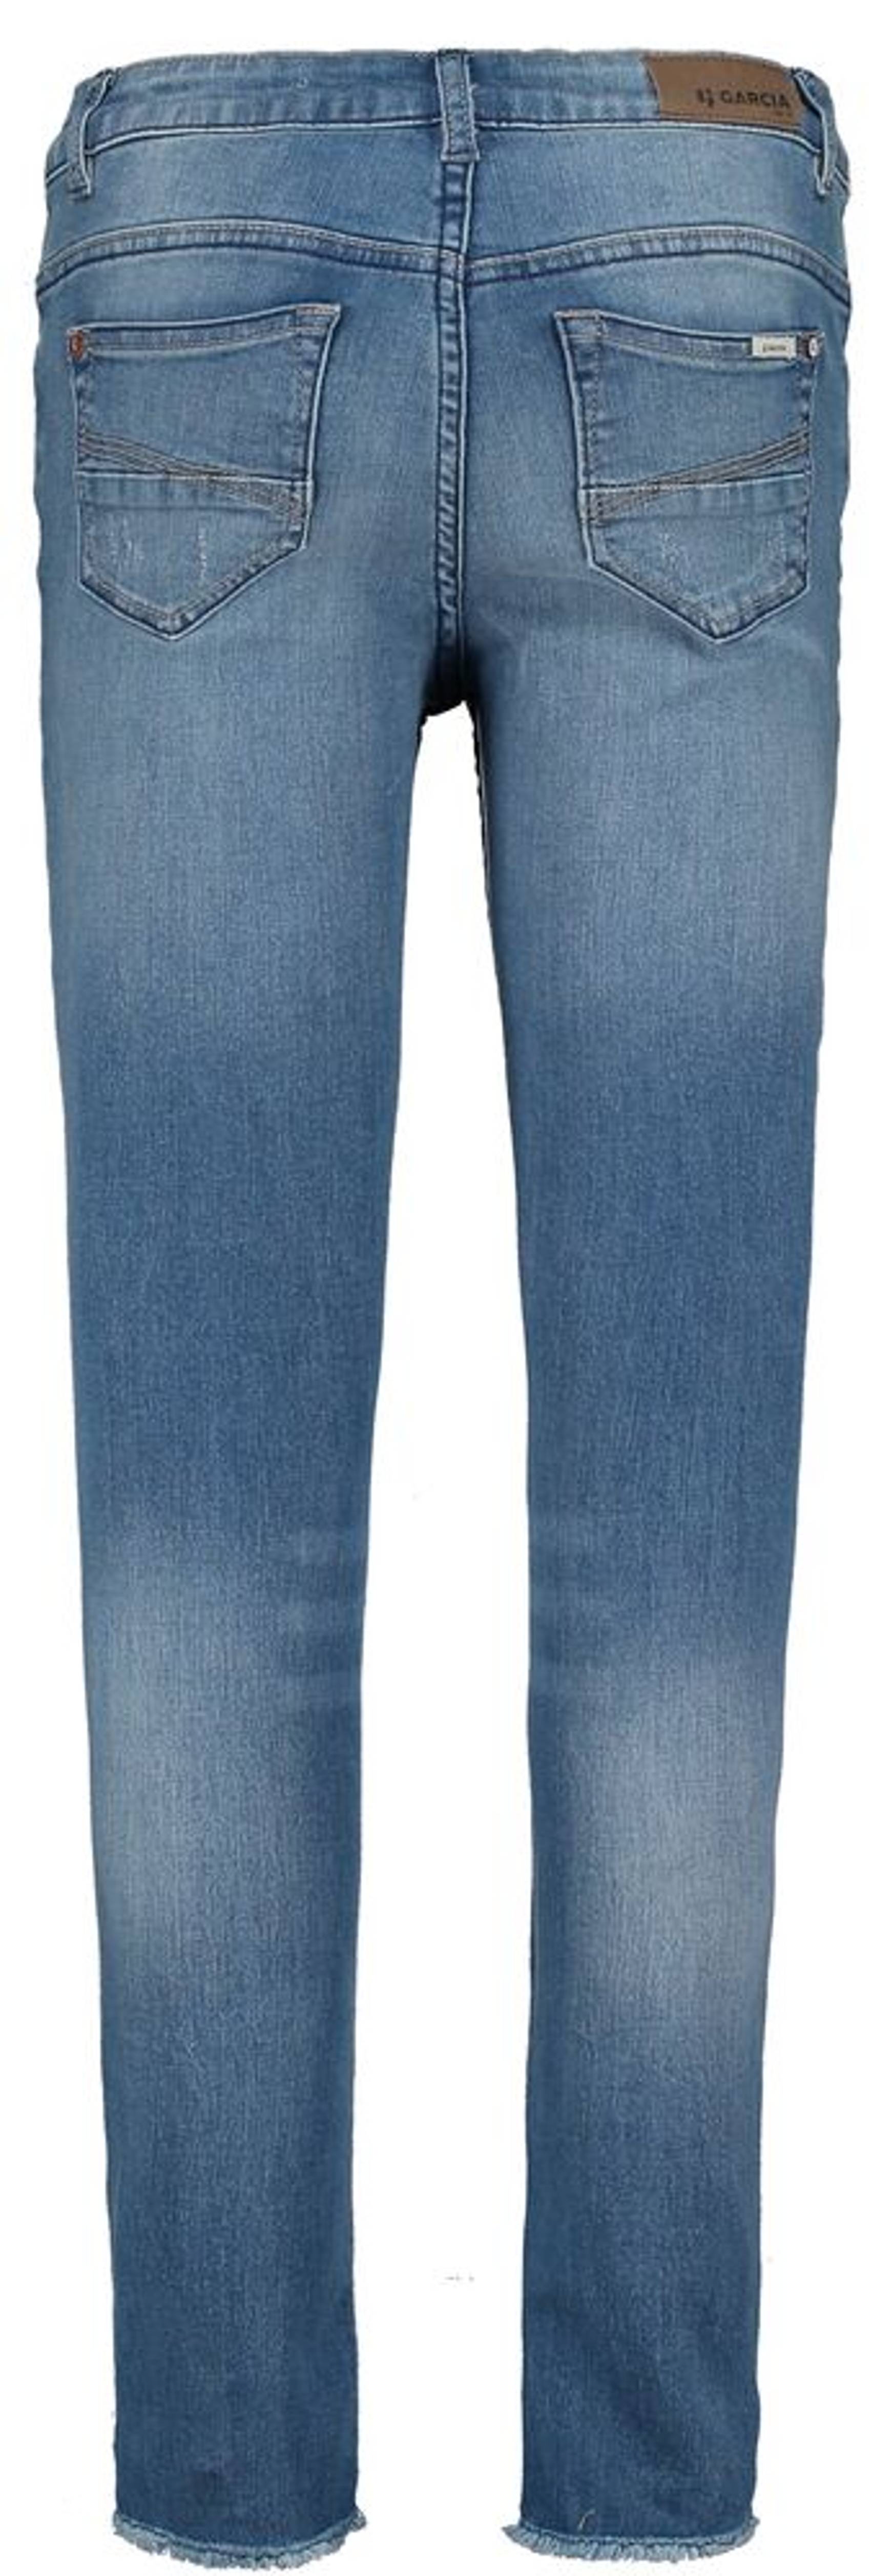 Jeans Superslim | Garcia - 570 Used Medium Rianna